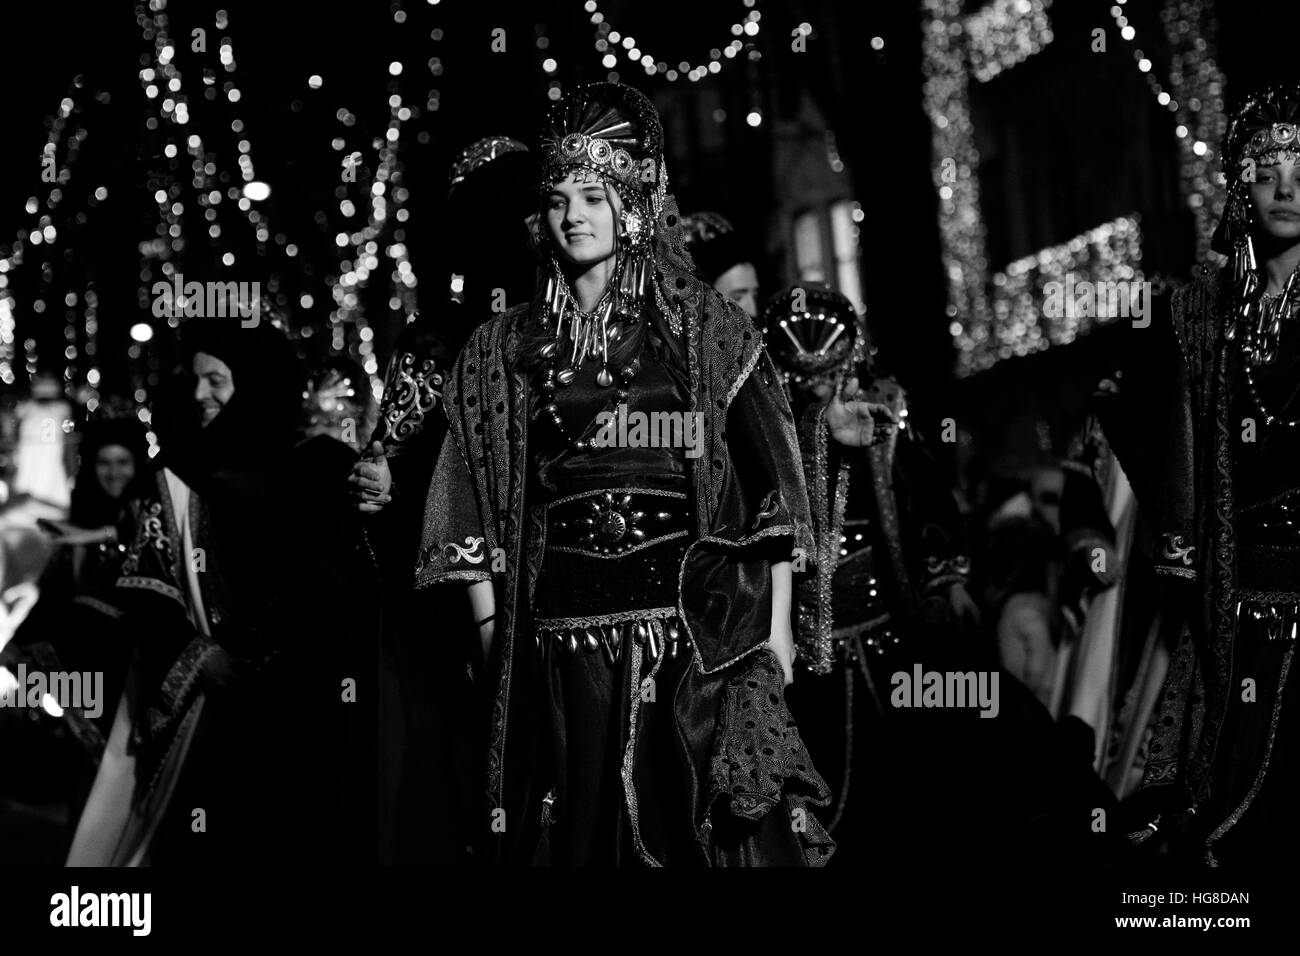 Bilbao, Espagne. 5 janvier, 2017. Une jeune femme déguisée lors de la traditionnelle Cavalcade des Rois Mages, un défilé traditionnel de trois rois dans la st Banque D'Images